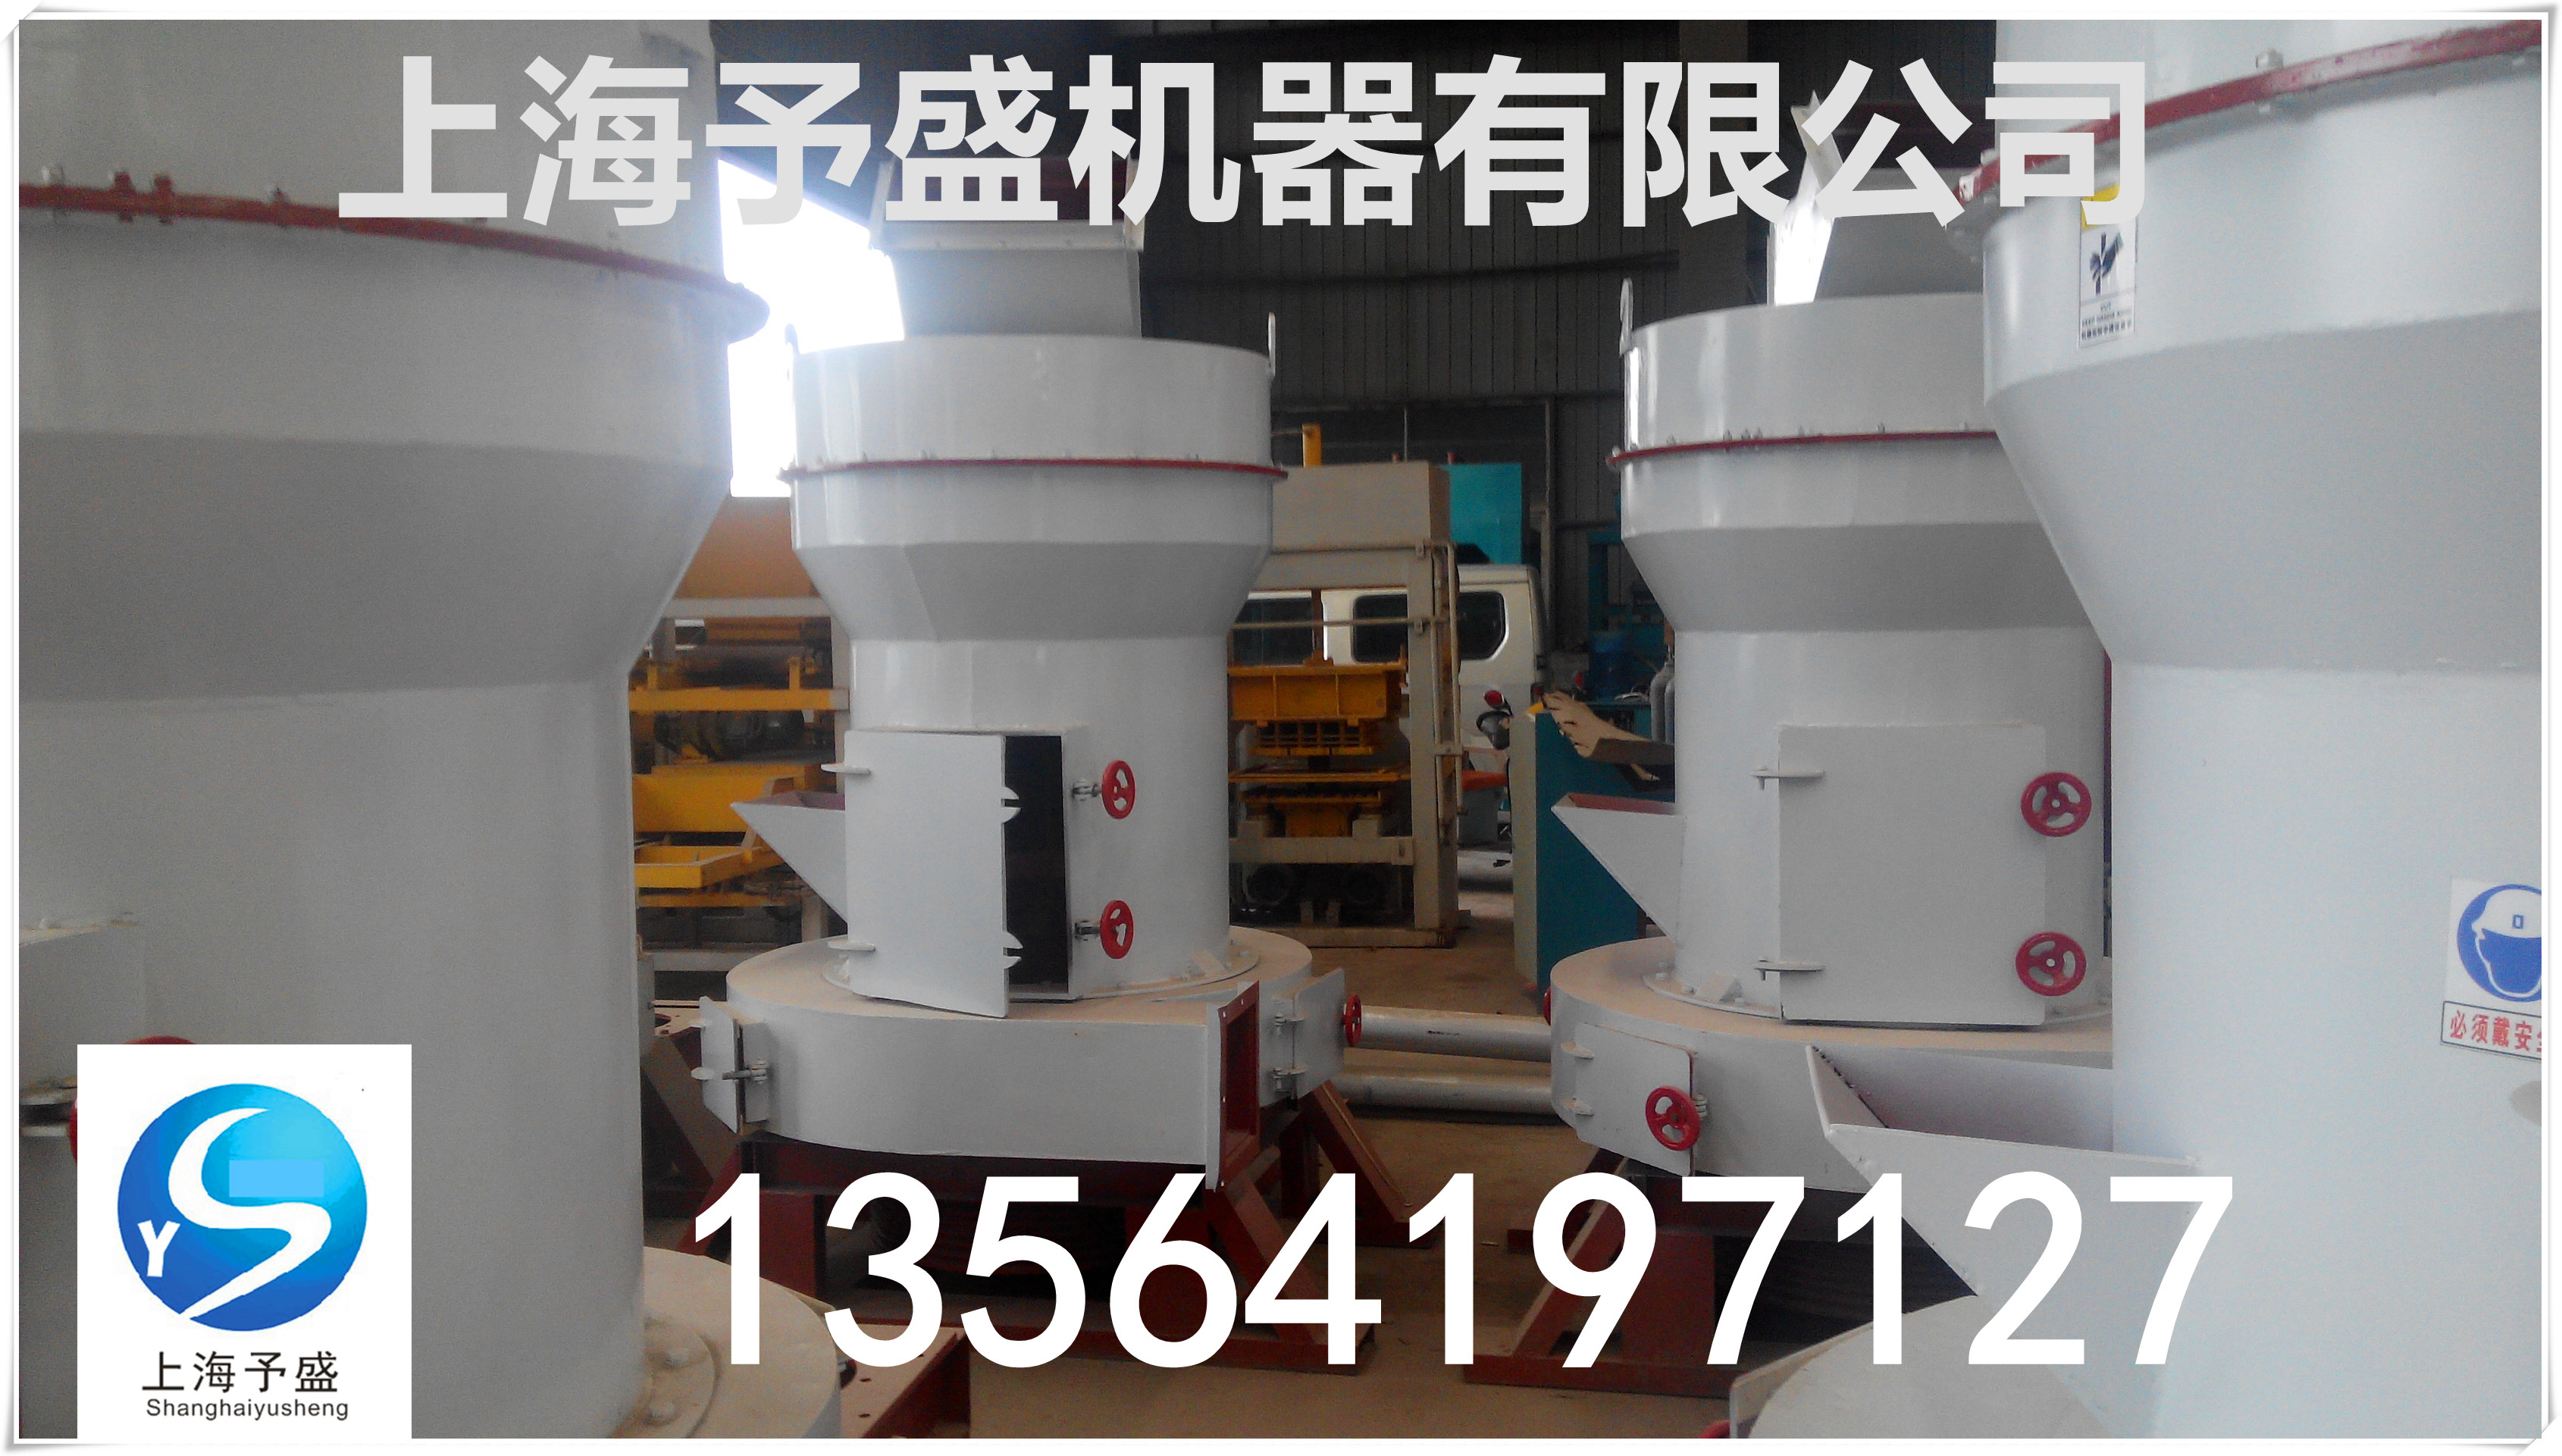 上海市雷蒙磨粉机厂家供应雷蒙磨粉机